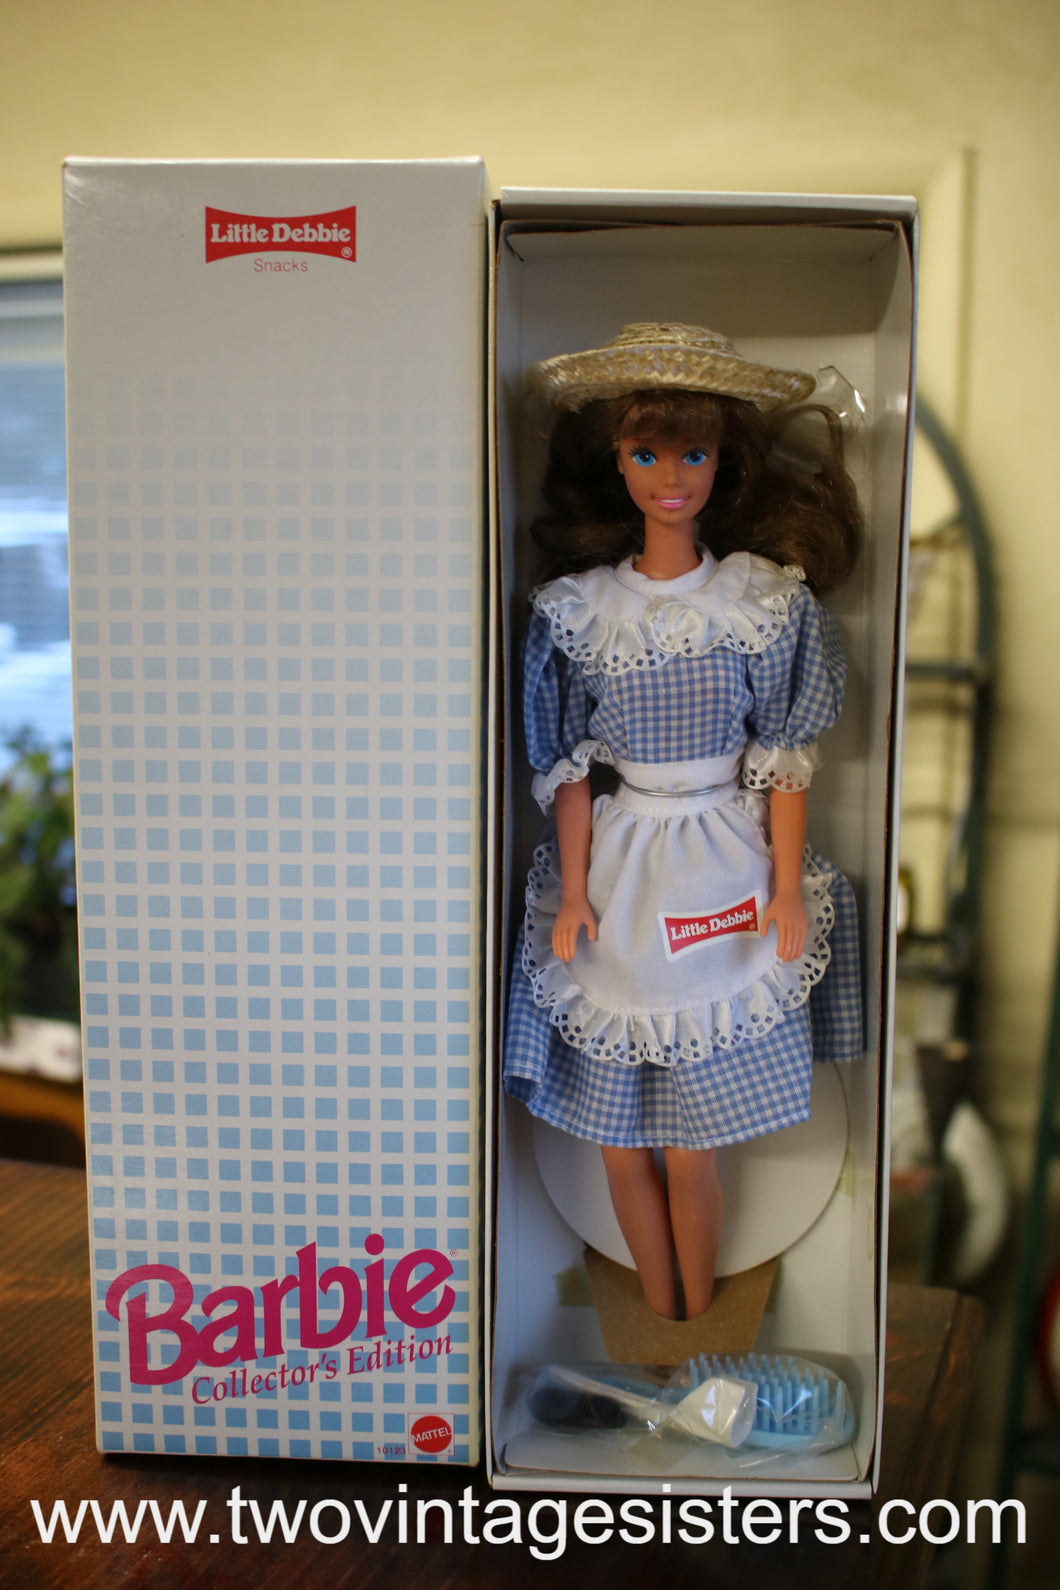 Barbie Little Debbie Collectors Edition 1992